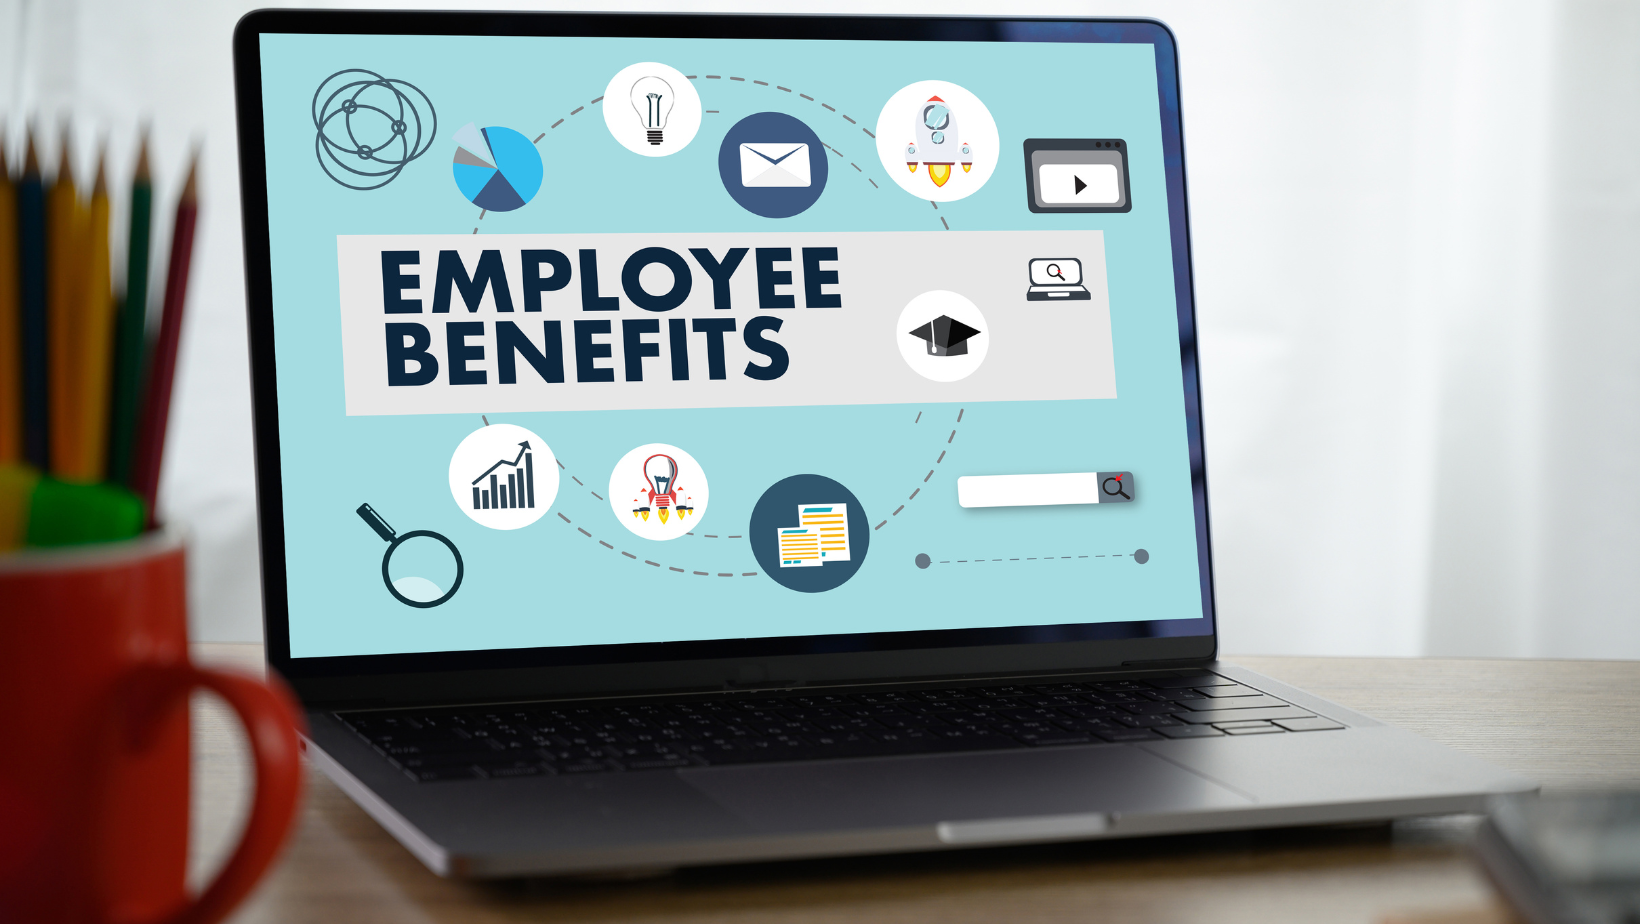 Employee Benefit